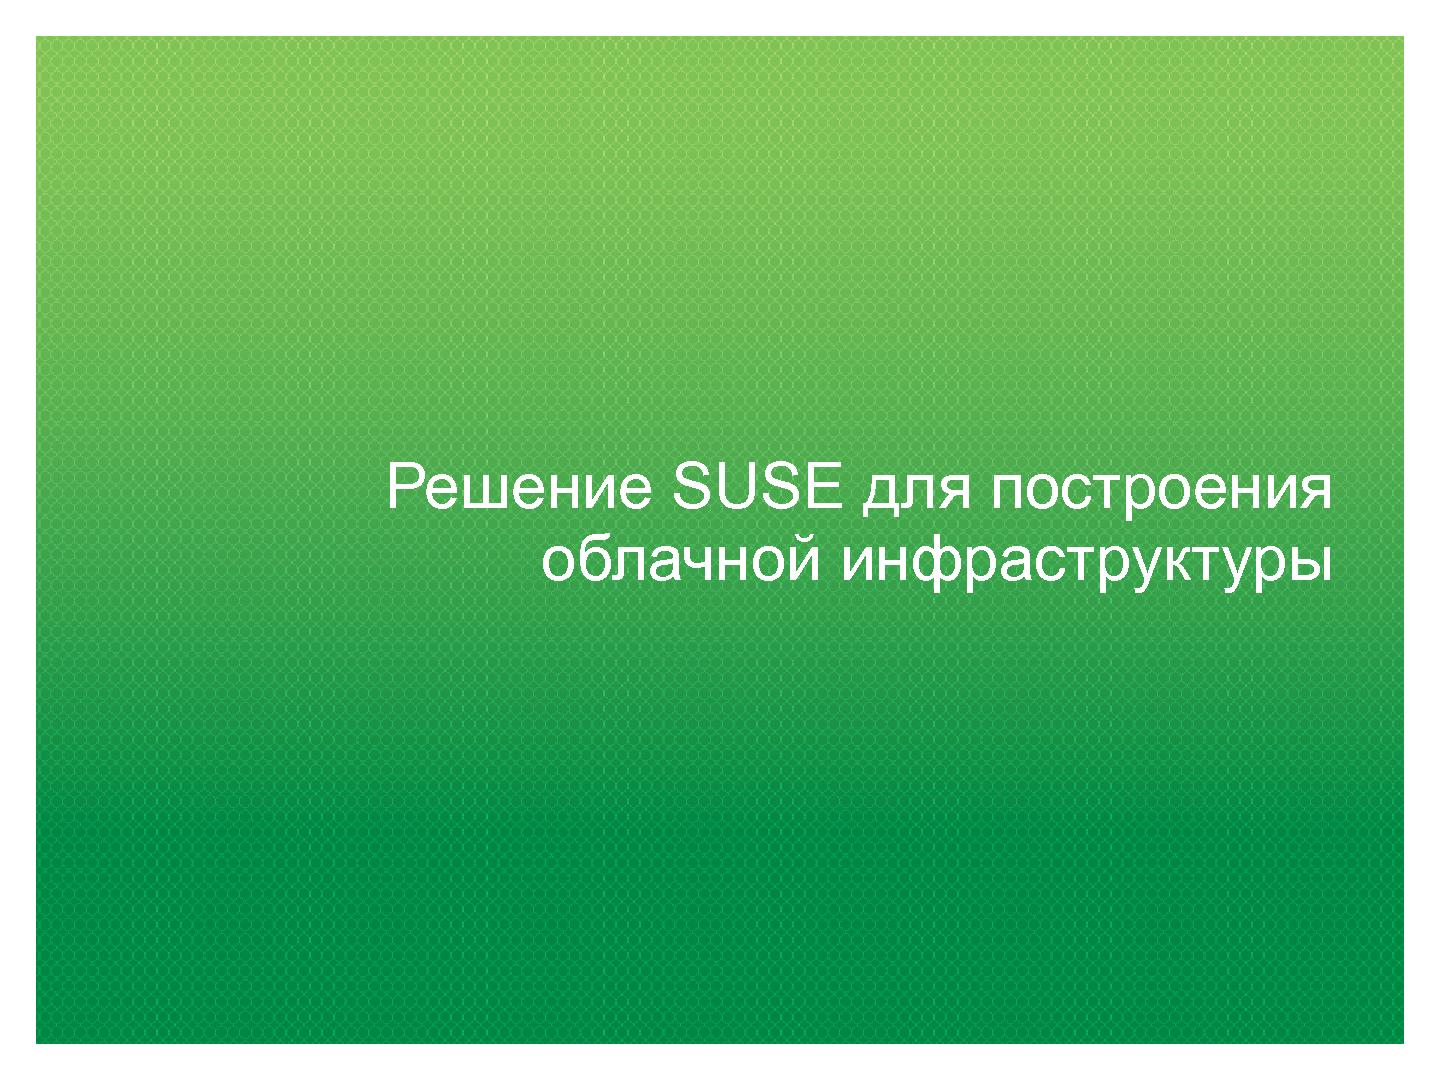 Файл:Открытая платформа SUSE для облачных вычислений (Кирилл Степанов, ROSS-2014).pdf